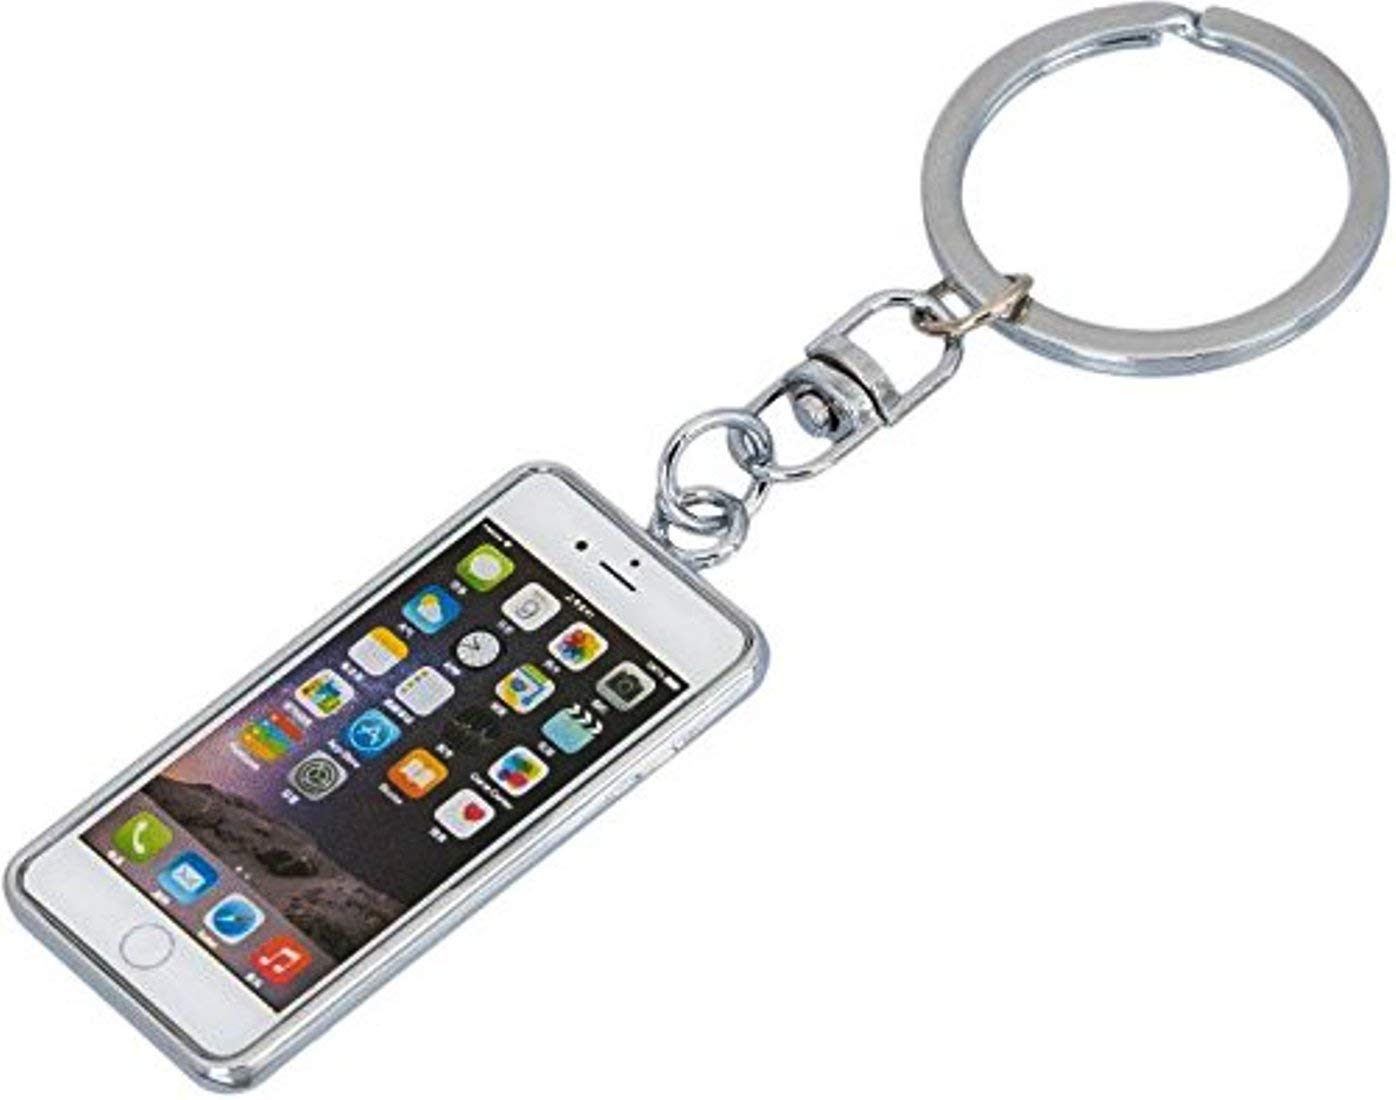 iPhone keychain